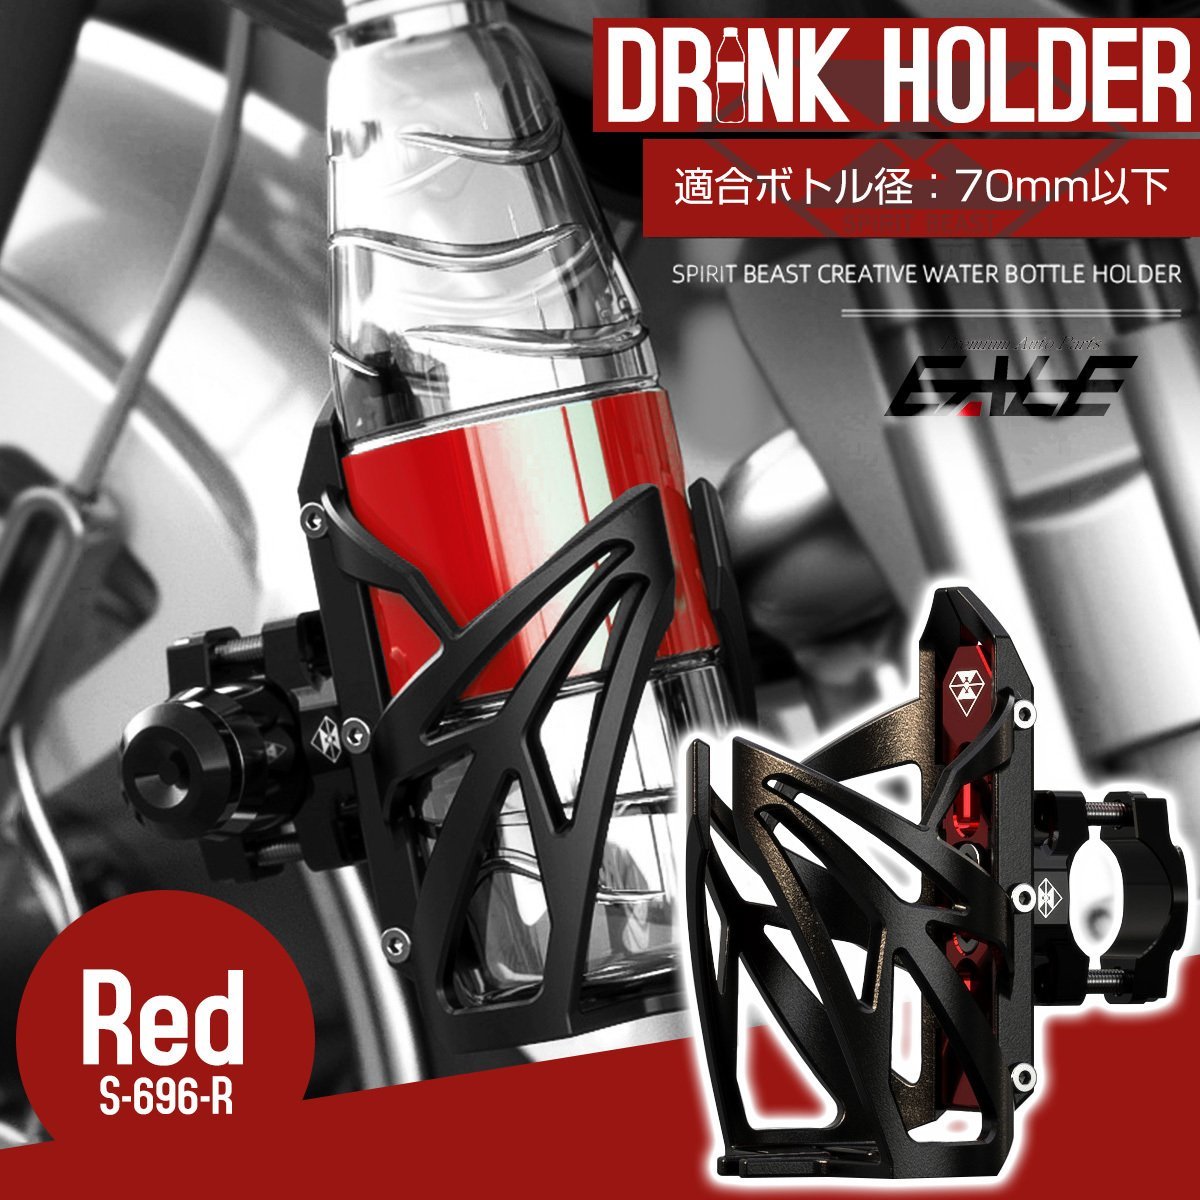 ドリンクホルダー バイク 自転車 汎用 ボトルケージ パイプブラケット付き レッド ペットボトルホルダー S-696R_画像1